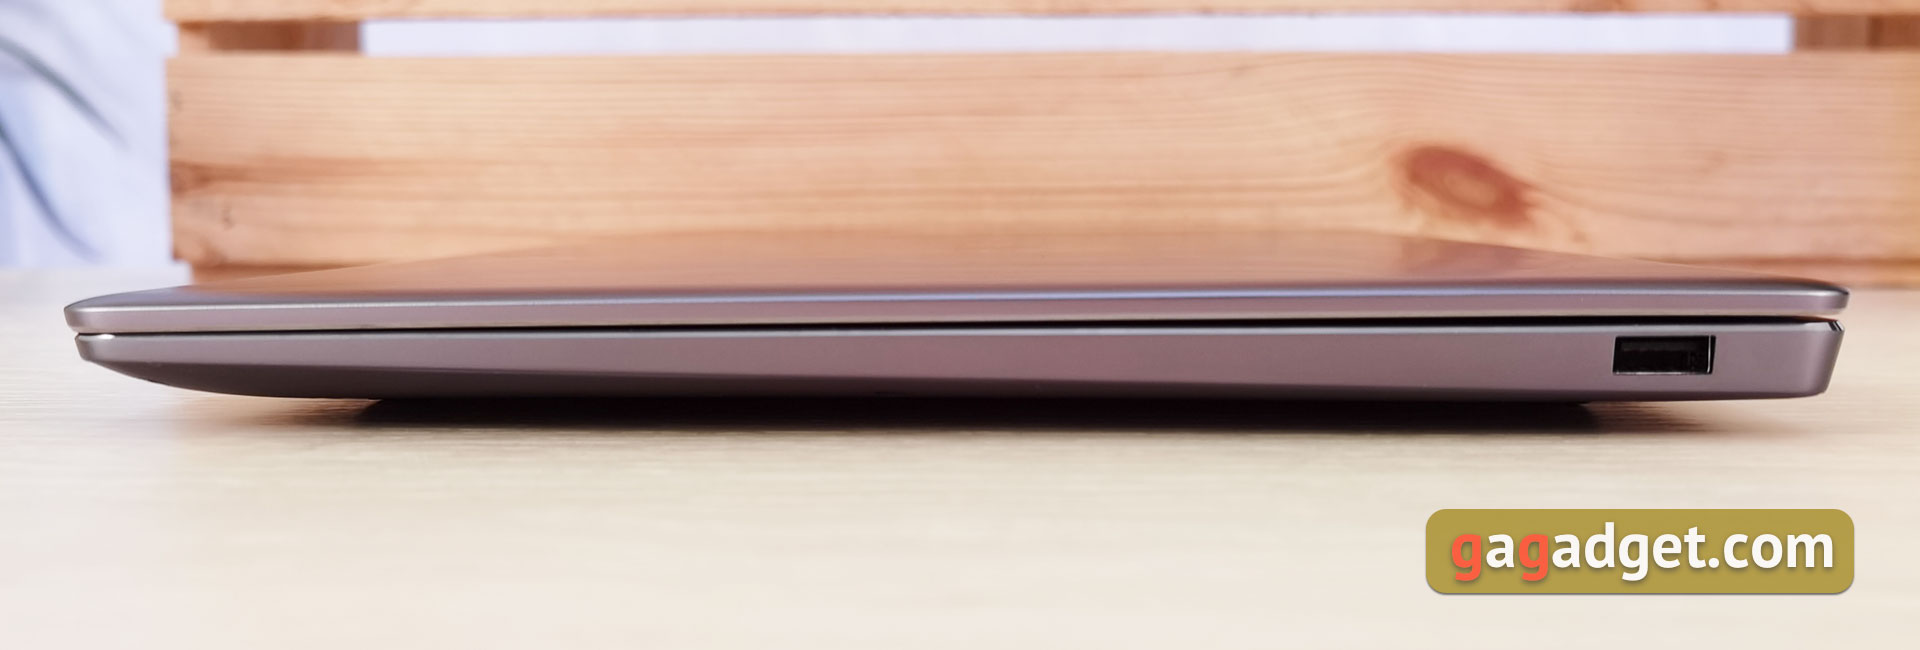 Recensione Huawei MateBook 14s: laptop Huawei con servizi Google e schermo veloce-6